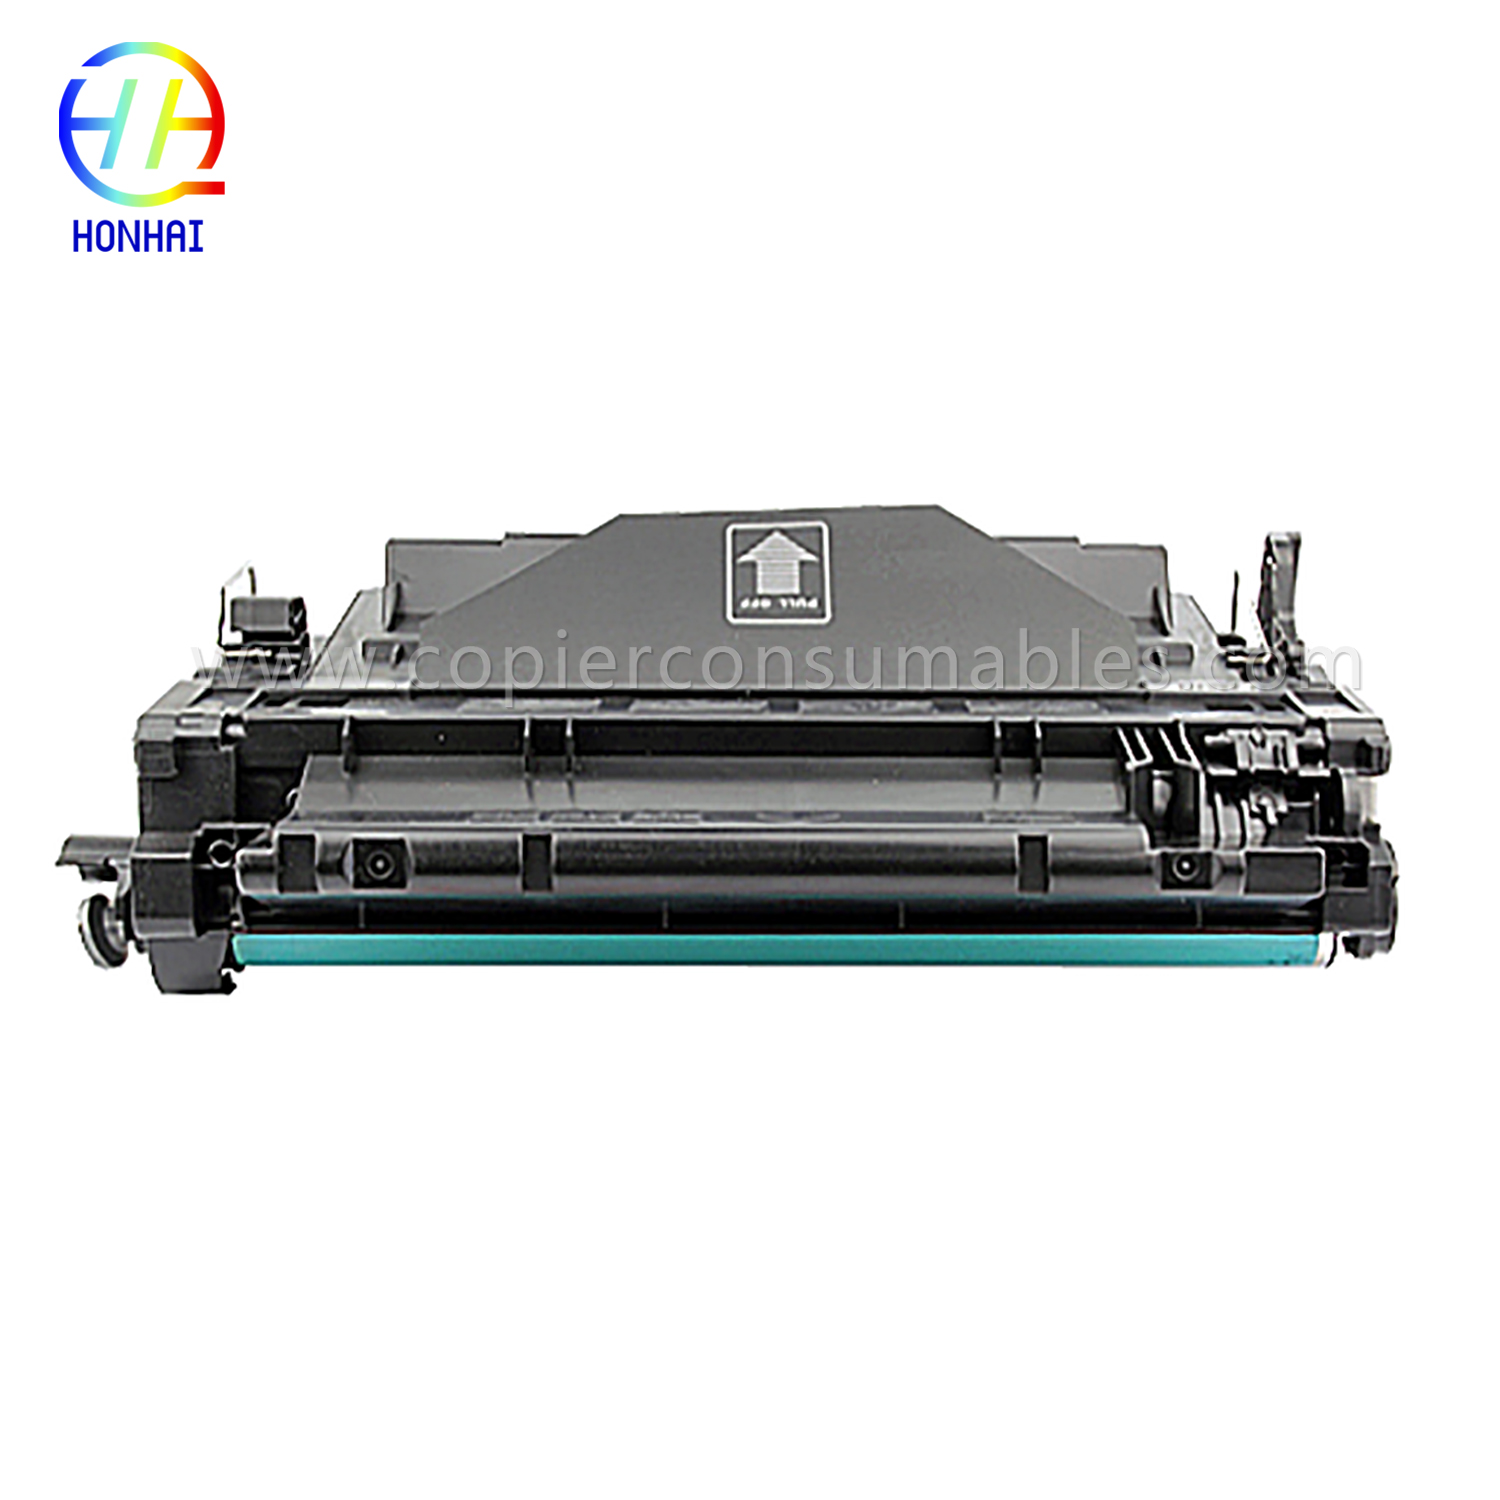 ទឹកថ្នាំពណ៌សម្រាប់ HP LaserJet Pro MFP M521dn Enterprise P3015 CE255X